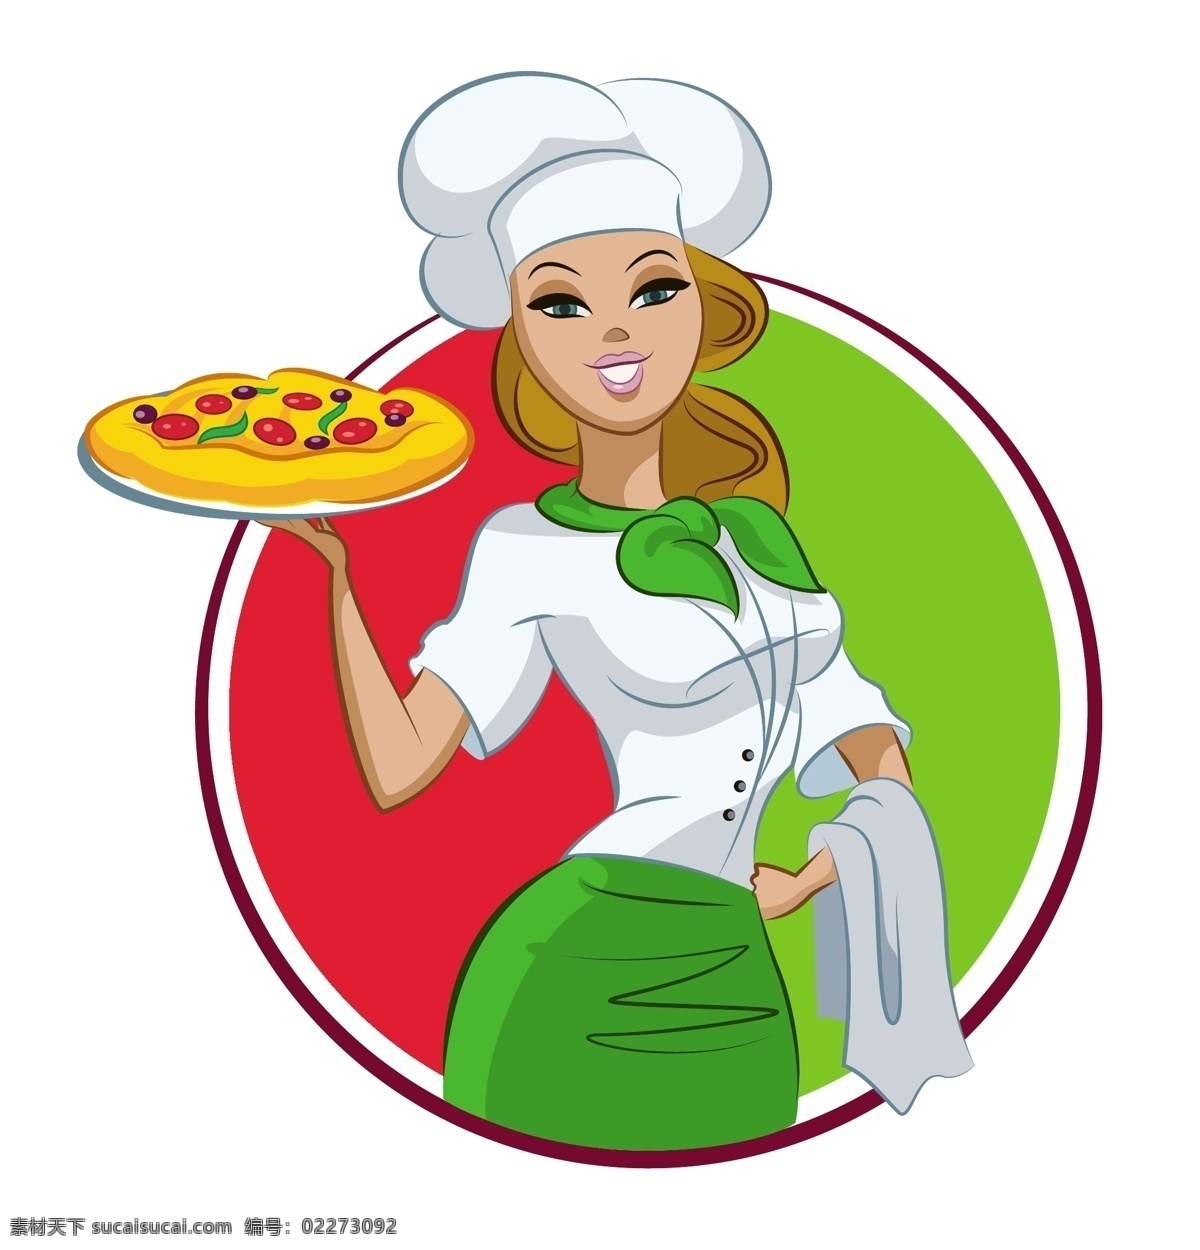 端 披萨 美女 插画 矢量 模板下载 人物 美食 食物 餐饮美食 生活百科 矢量素材 白色